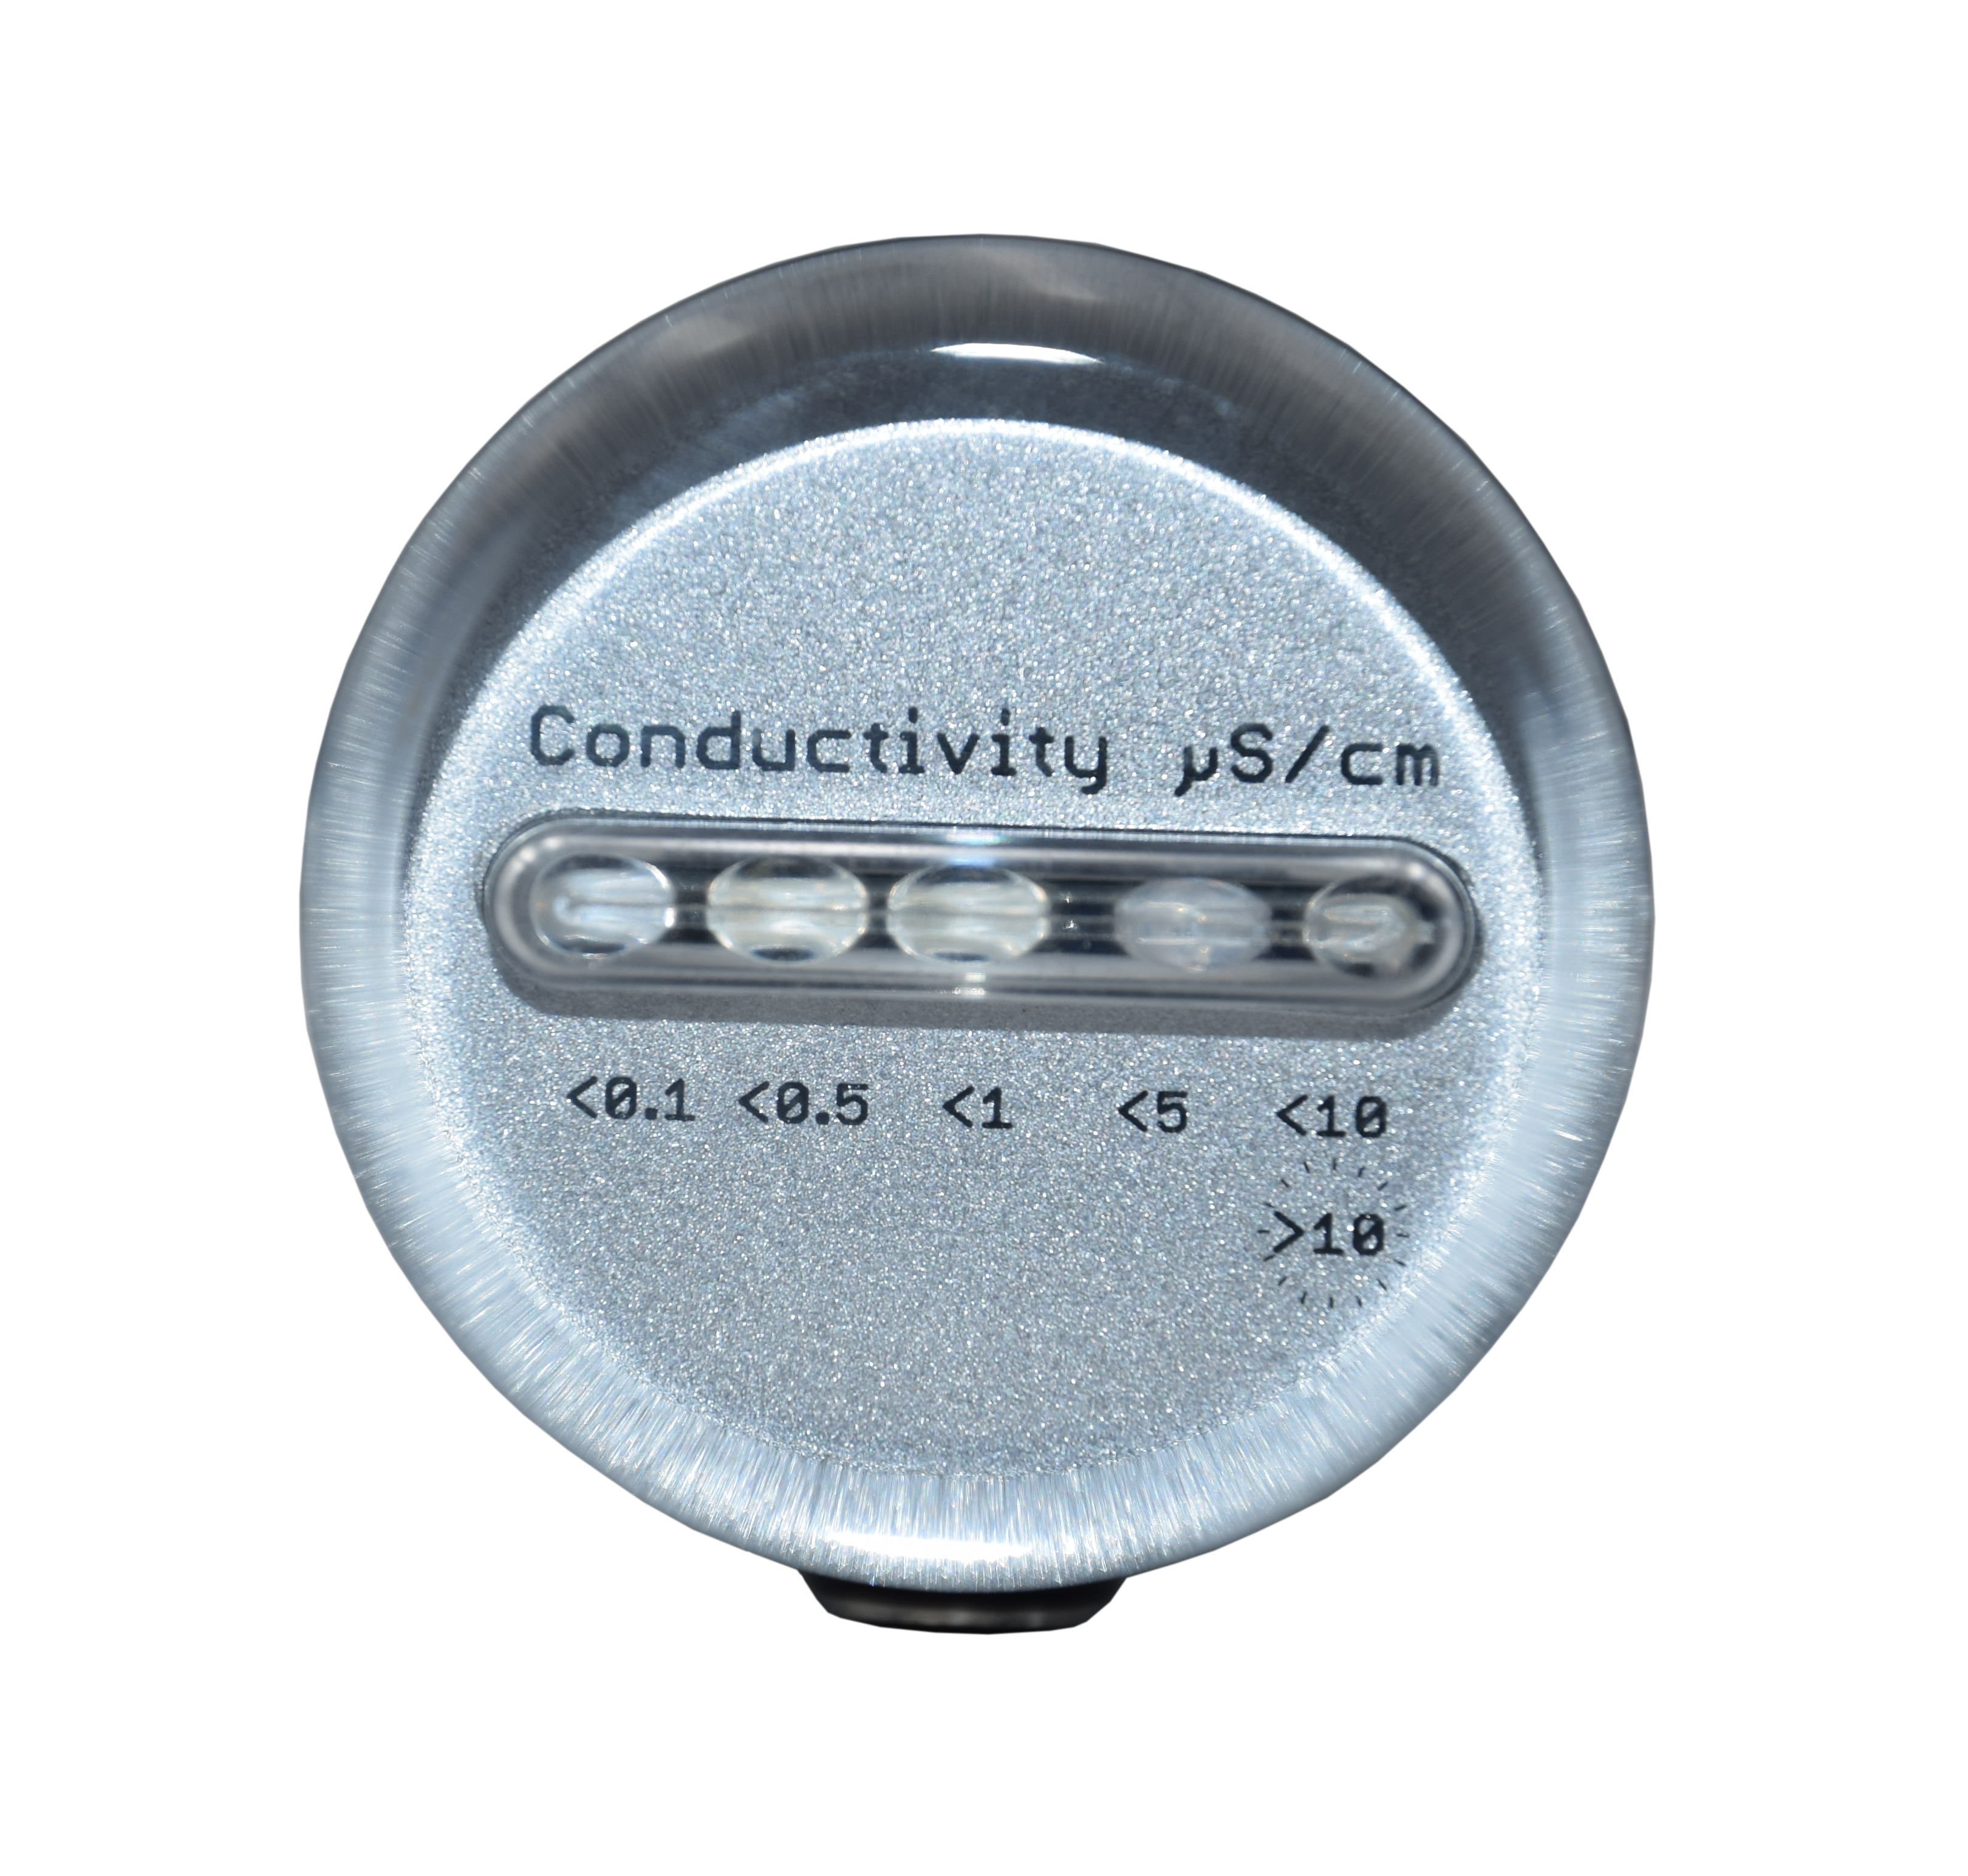 N-LED10, Leitfähigkeitsmessgerät 0-10 μS/cm mit 5 LEDs und integrierter 3/4' Einschraubmesszelle